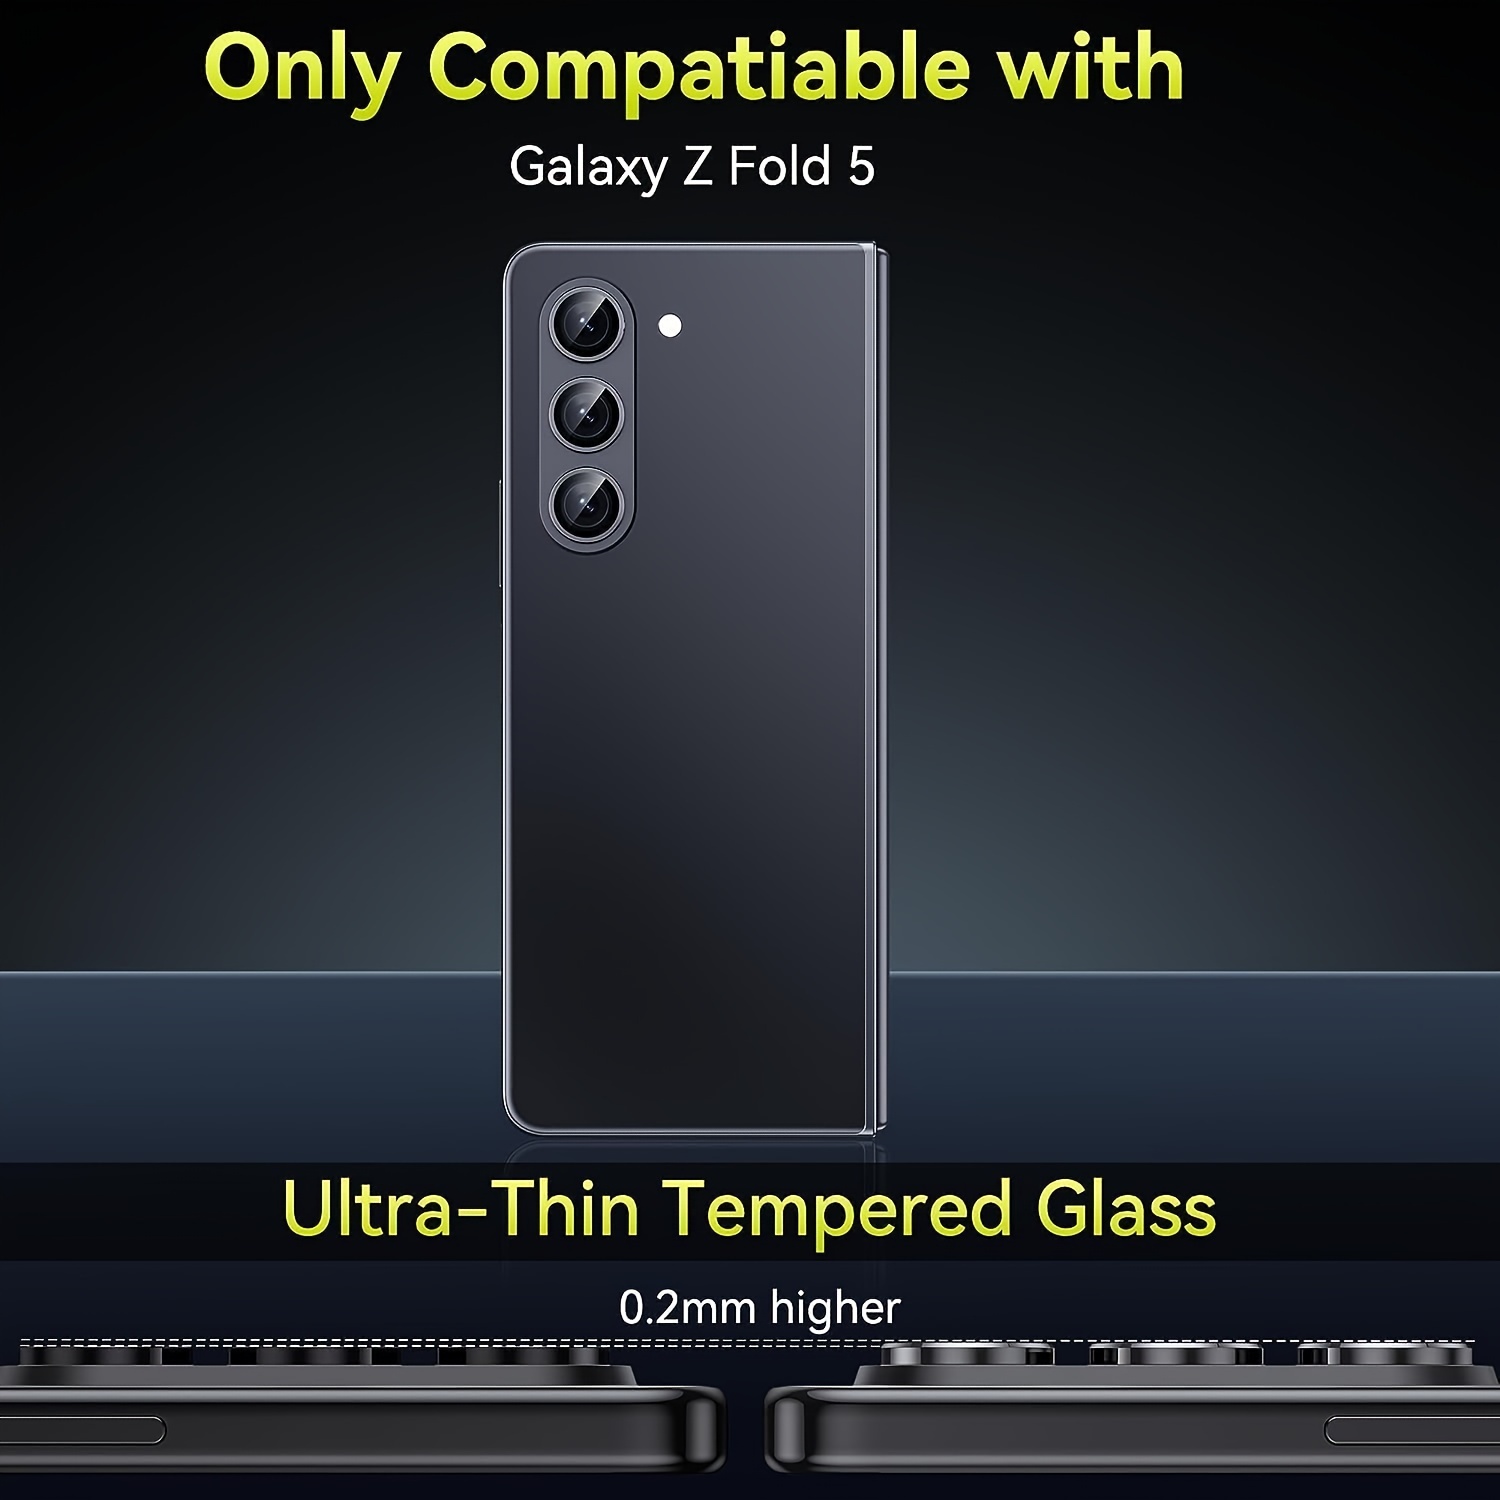 Protecteur d'objectif en verre trempé 0.2mm (2 pièces) Samsung